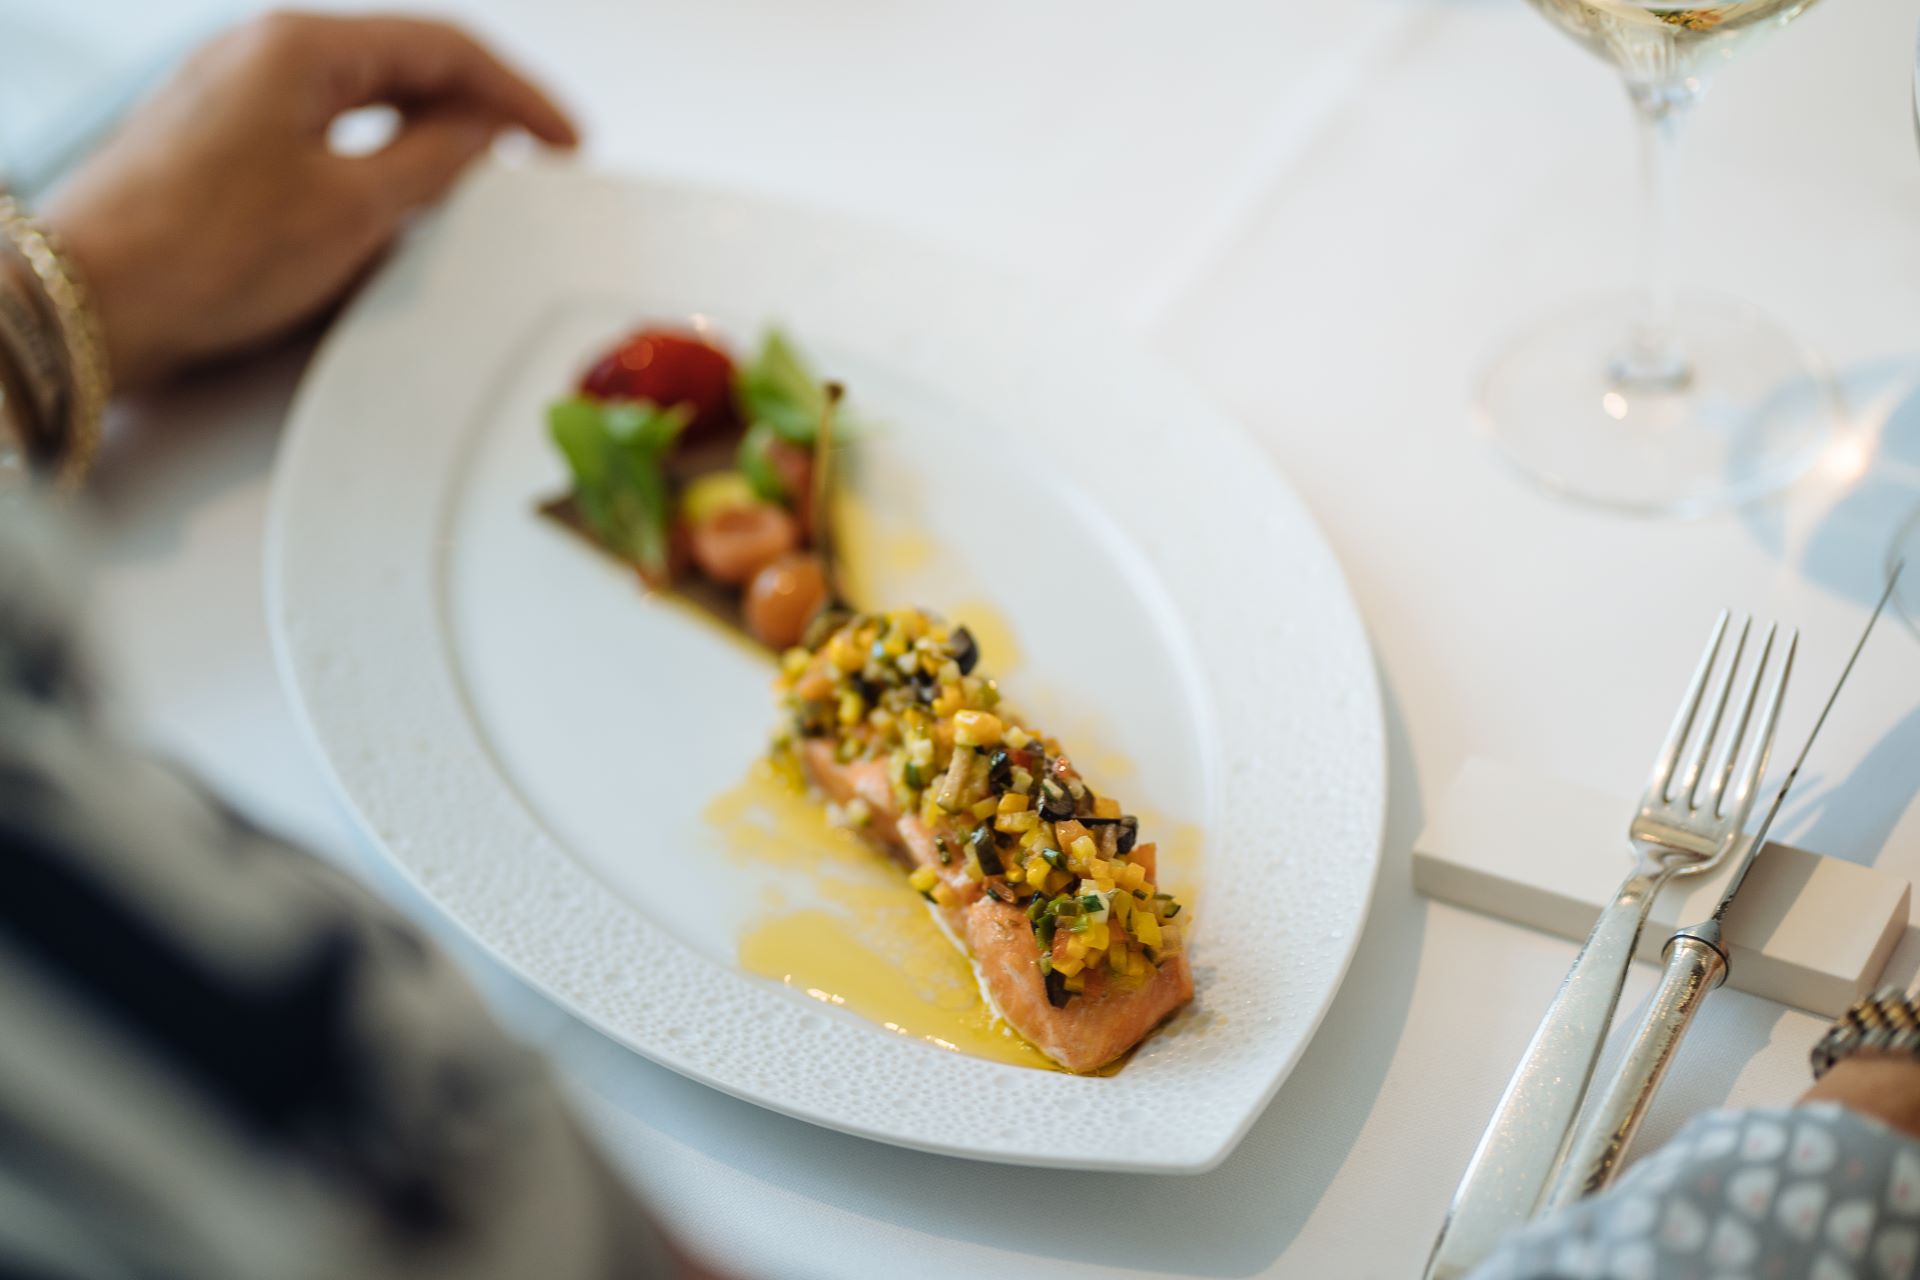 Une assiette de saumon avec des garnitures et une petite salade d'accompagnement est au centre de cette image. La main d'un invité est visible, mais hors champ, à gauche de l'assiette, qui est posée sur une nappe blanche propre.